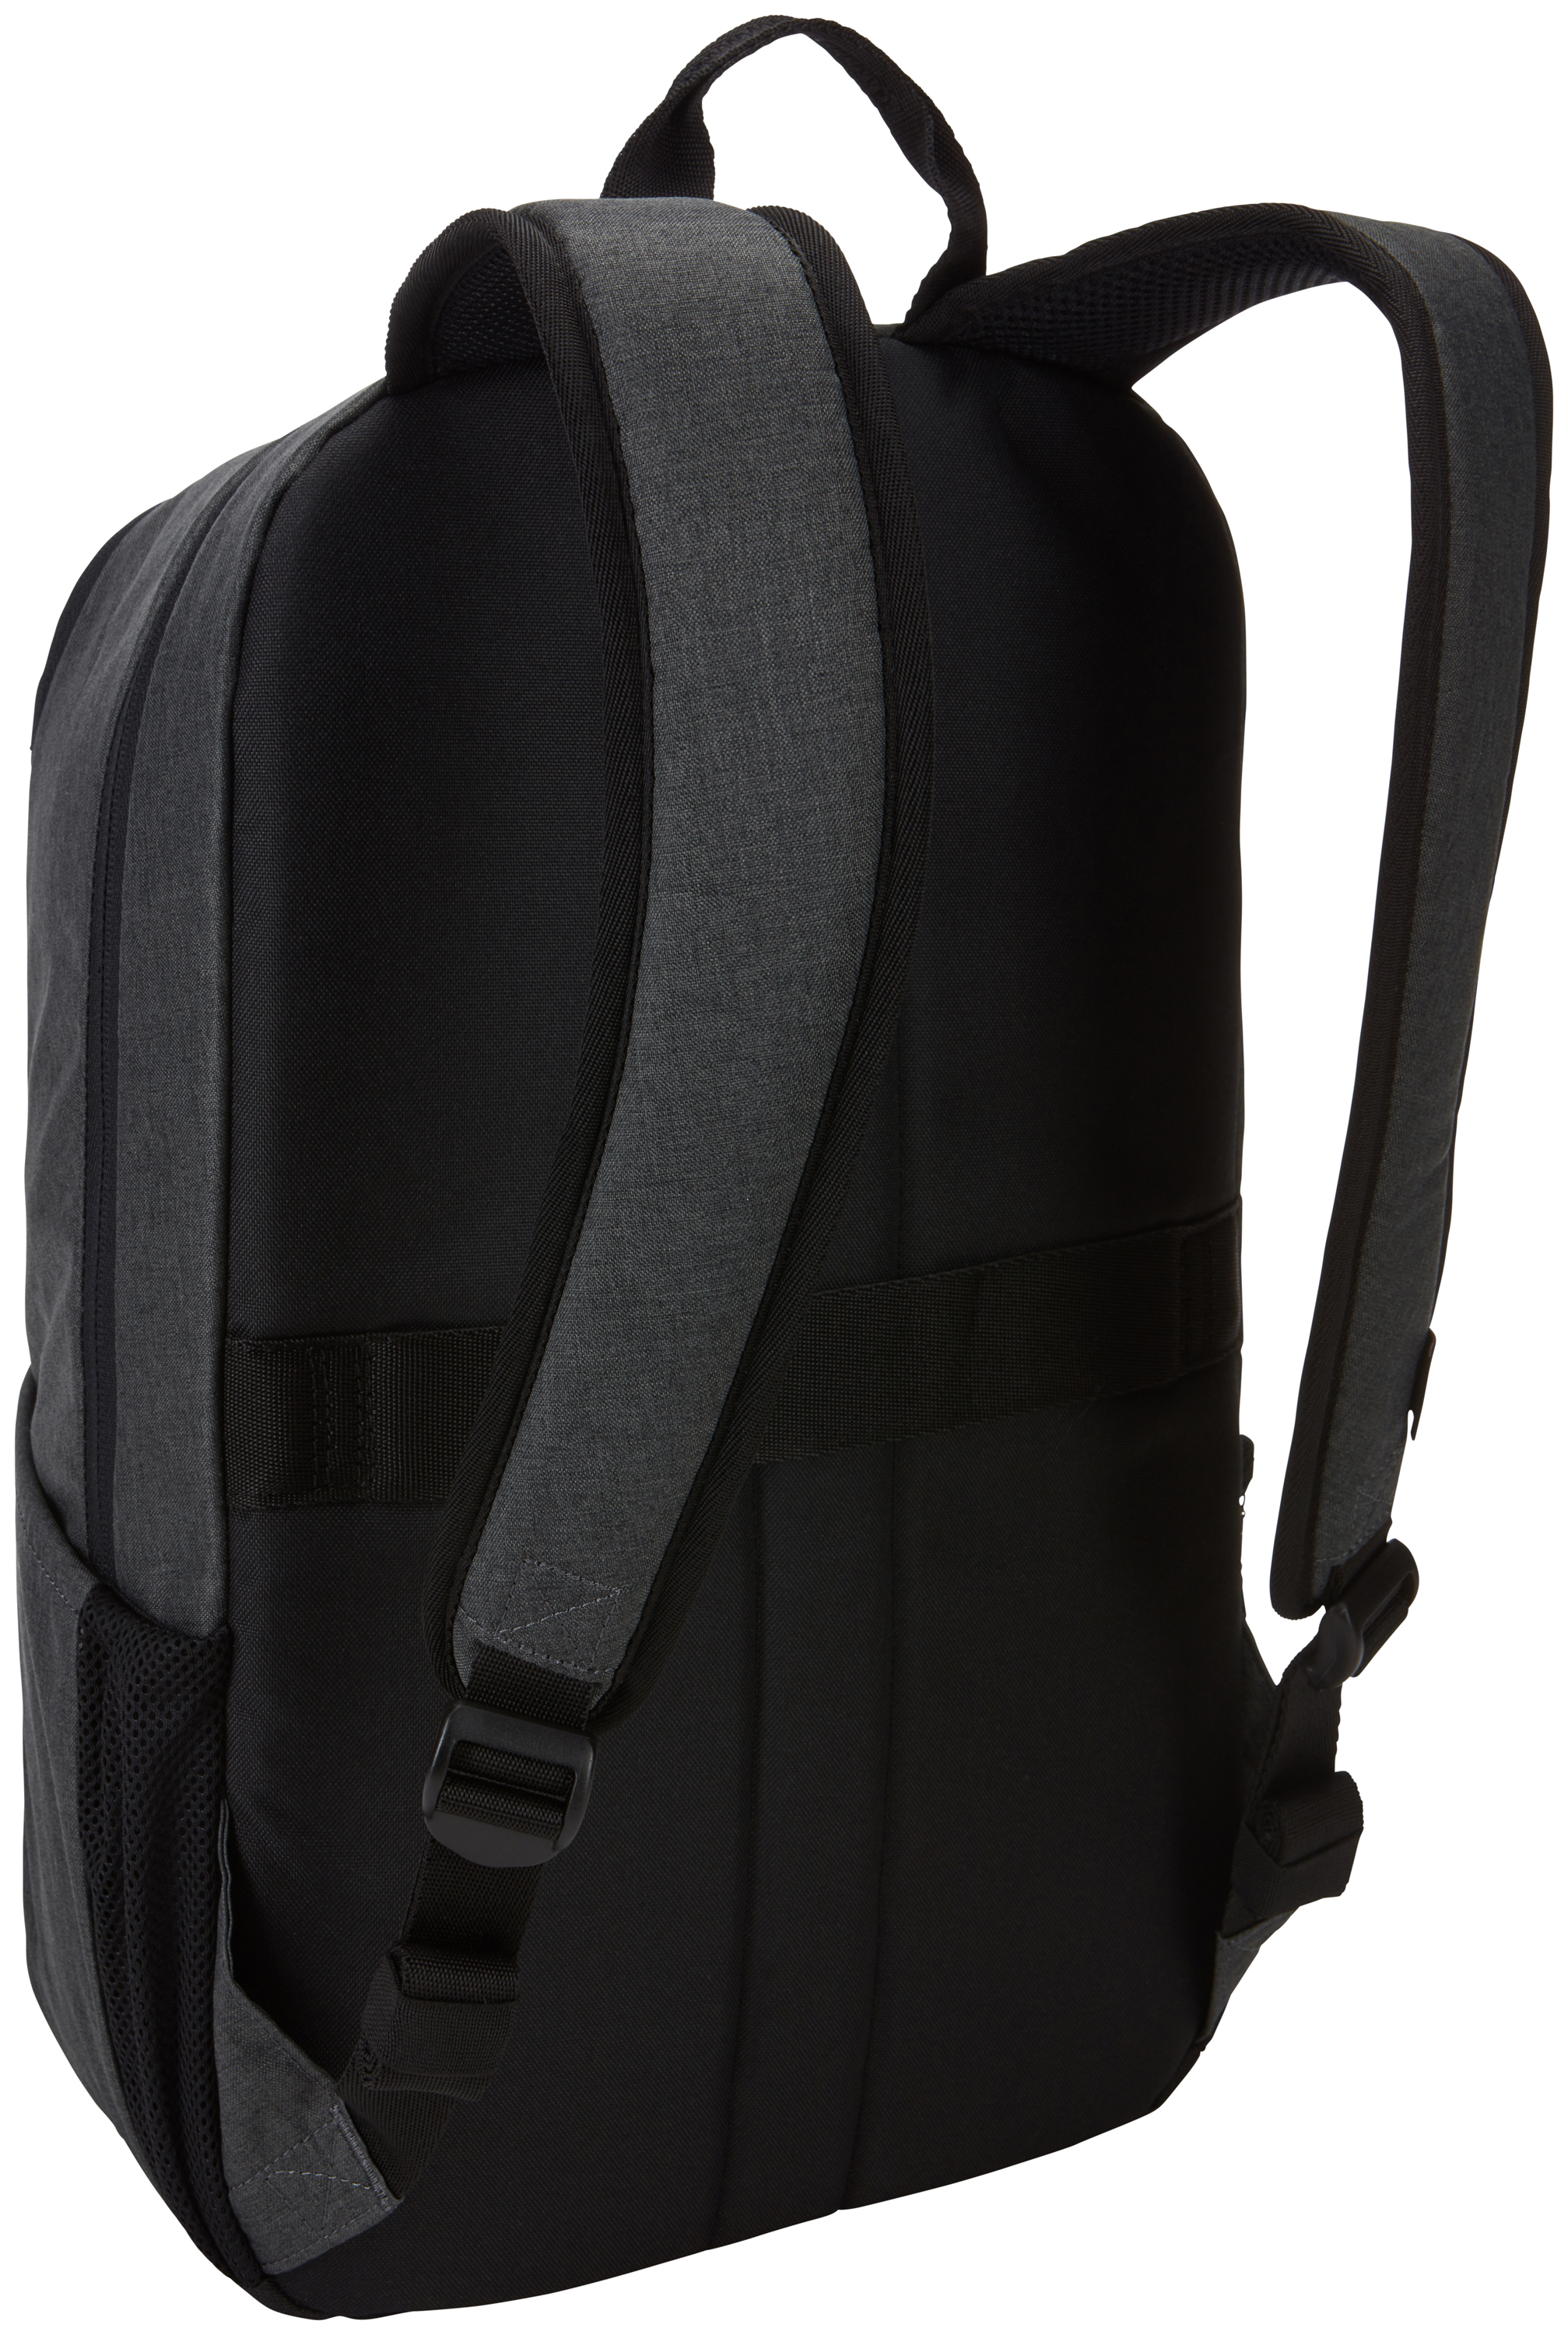 Case Logic Era Polyester Black backpack